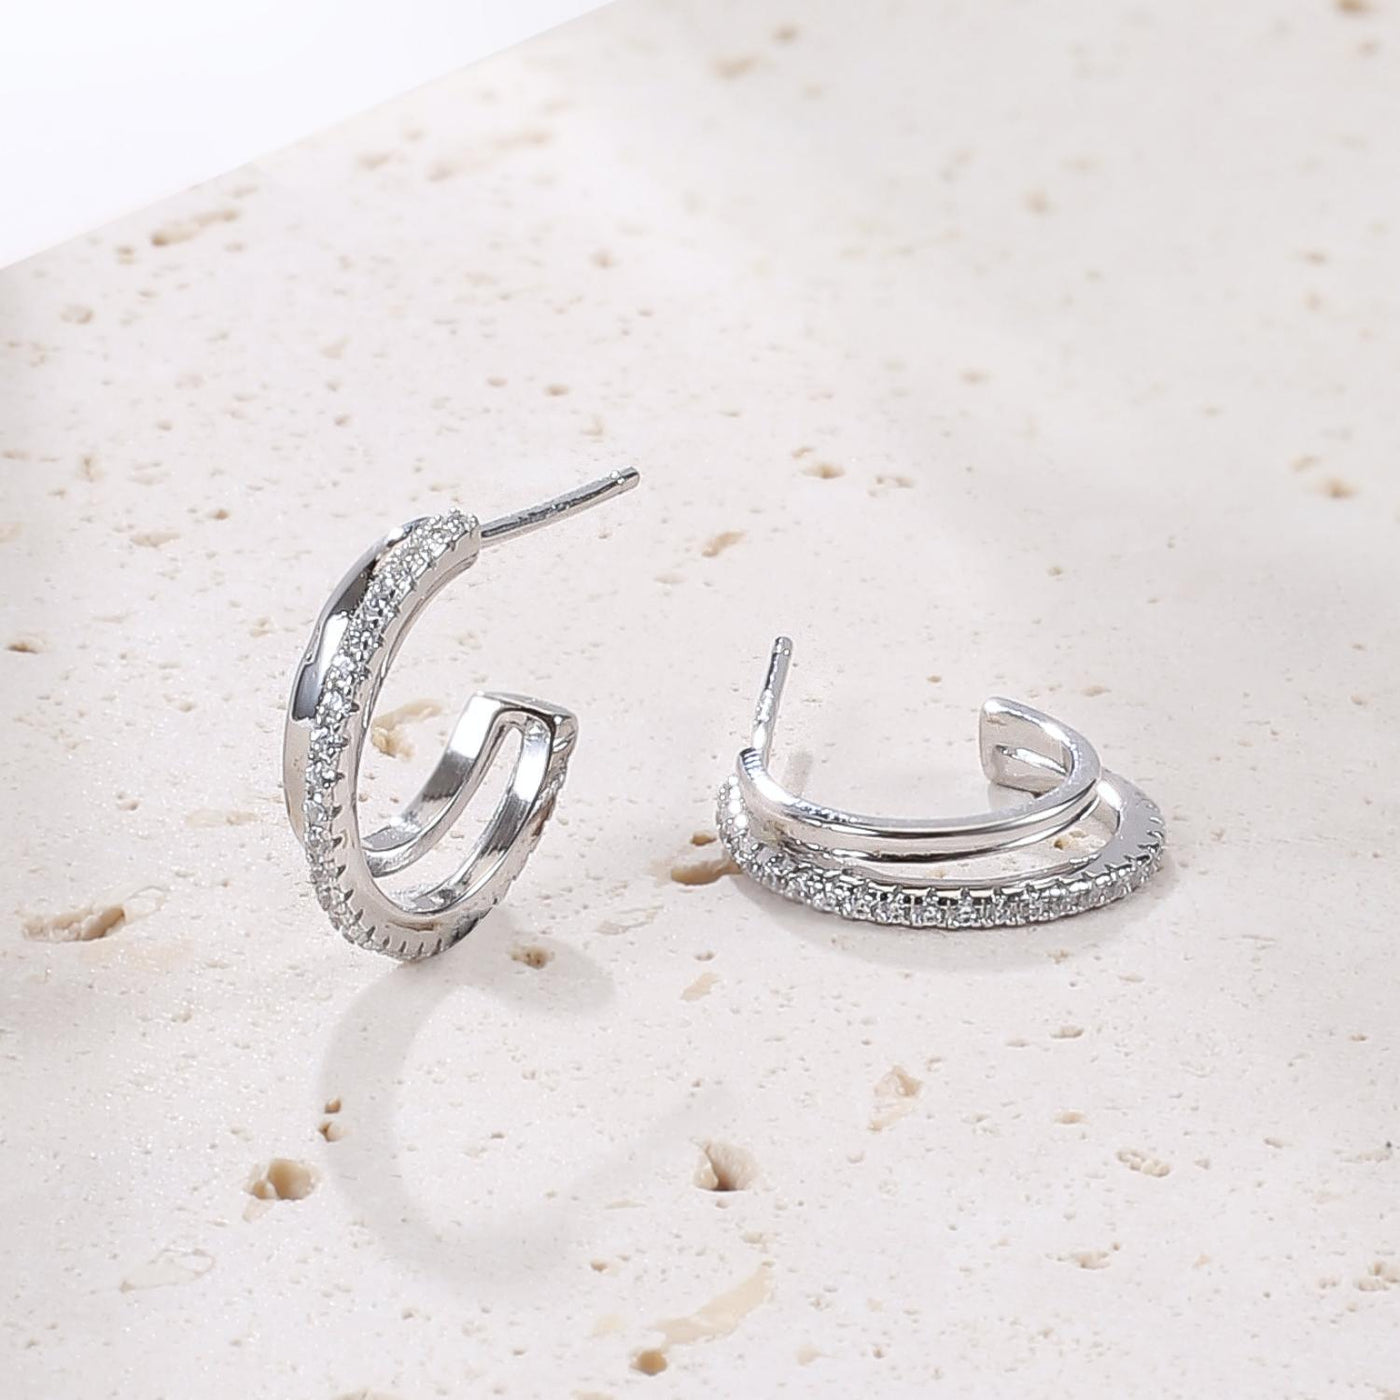 Double Hoop Gemstones Earrings Sterling Silver Gold